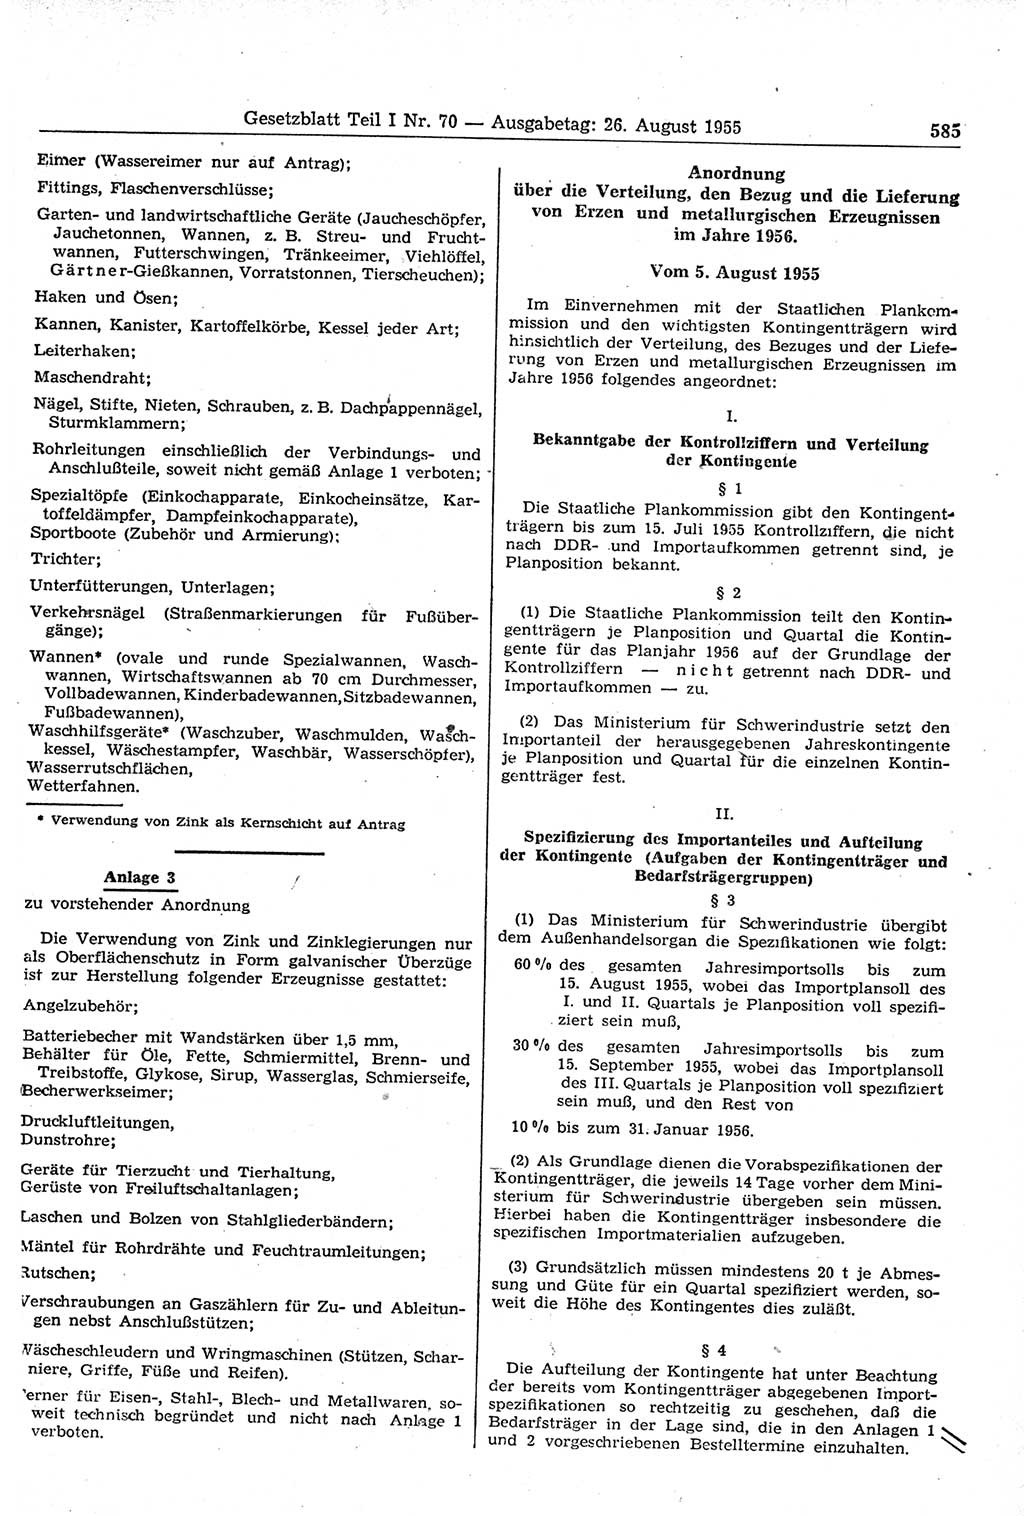 Gesetzblatt (GBl.) der Deutschen Demokratischen Republik (DDR) Teil Ⅰ 1955, Seite 585 (GBl. DDR Ⅰ 1955, S. 585)